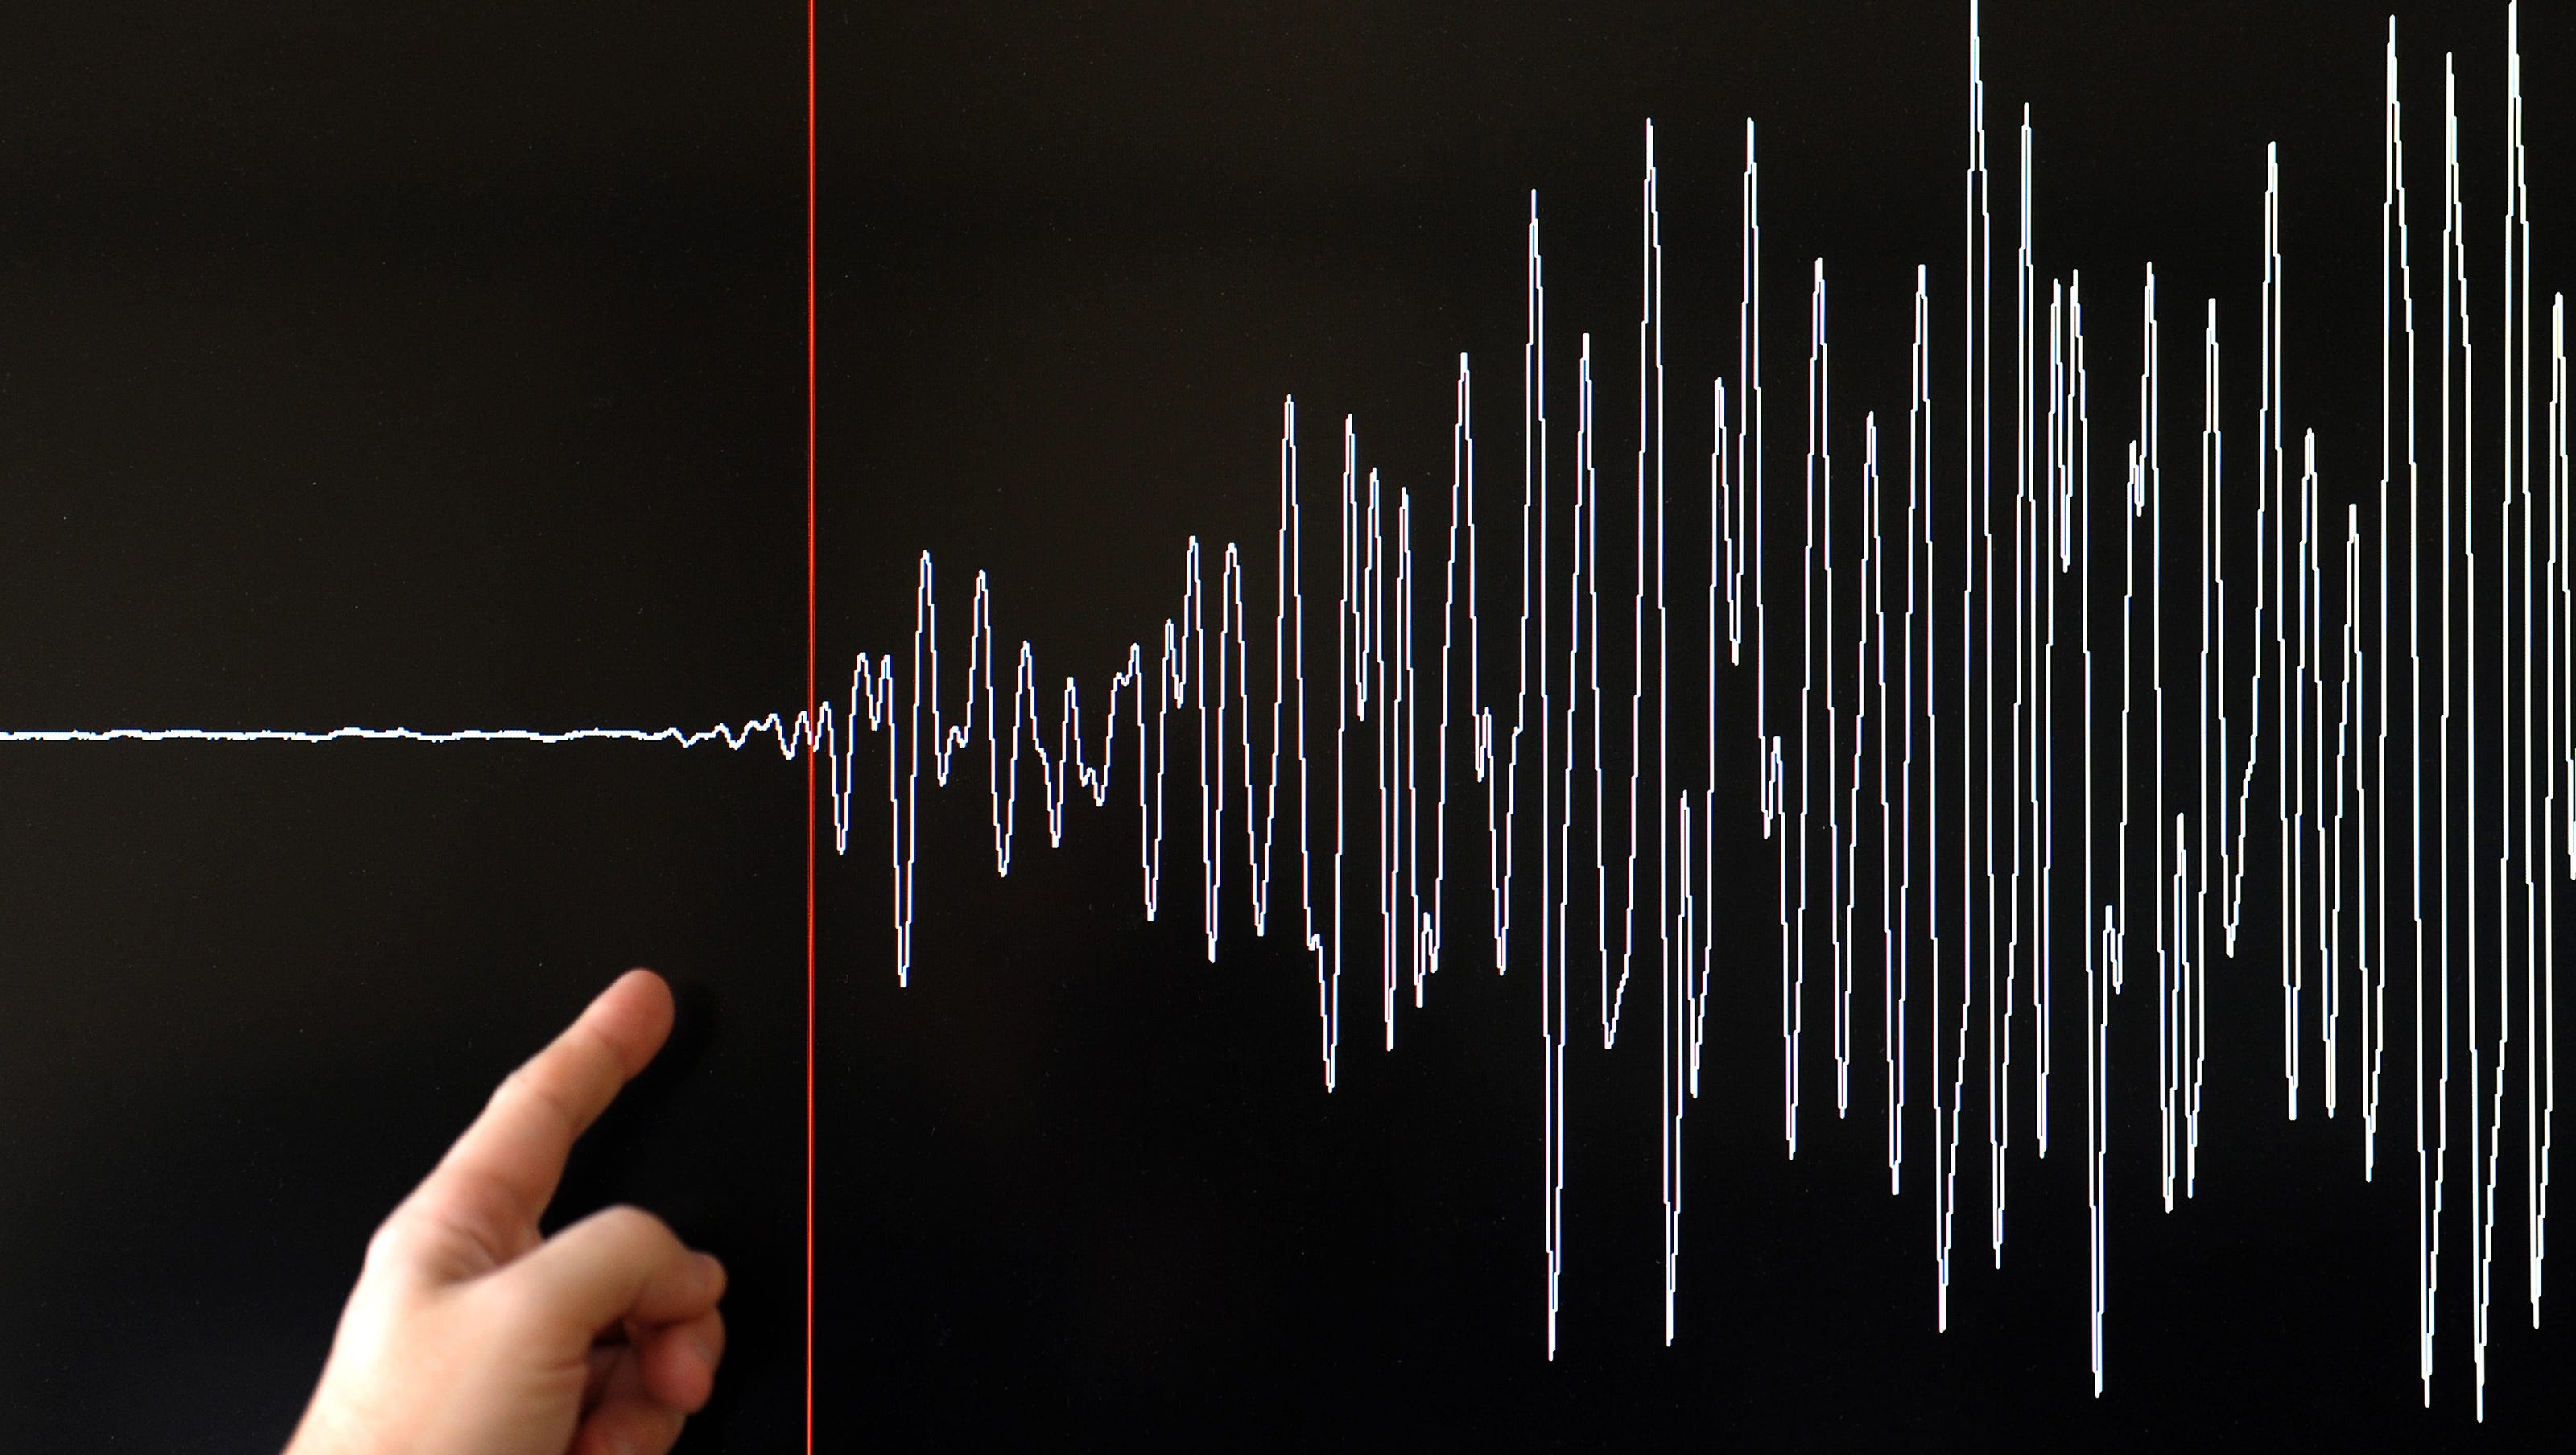 Son dakika | AFAD ve Kandilli Rasathanesi duyurdu: Tokat'ın Pazar ilçesinde 3.9 büyüklüğünde deprem